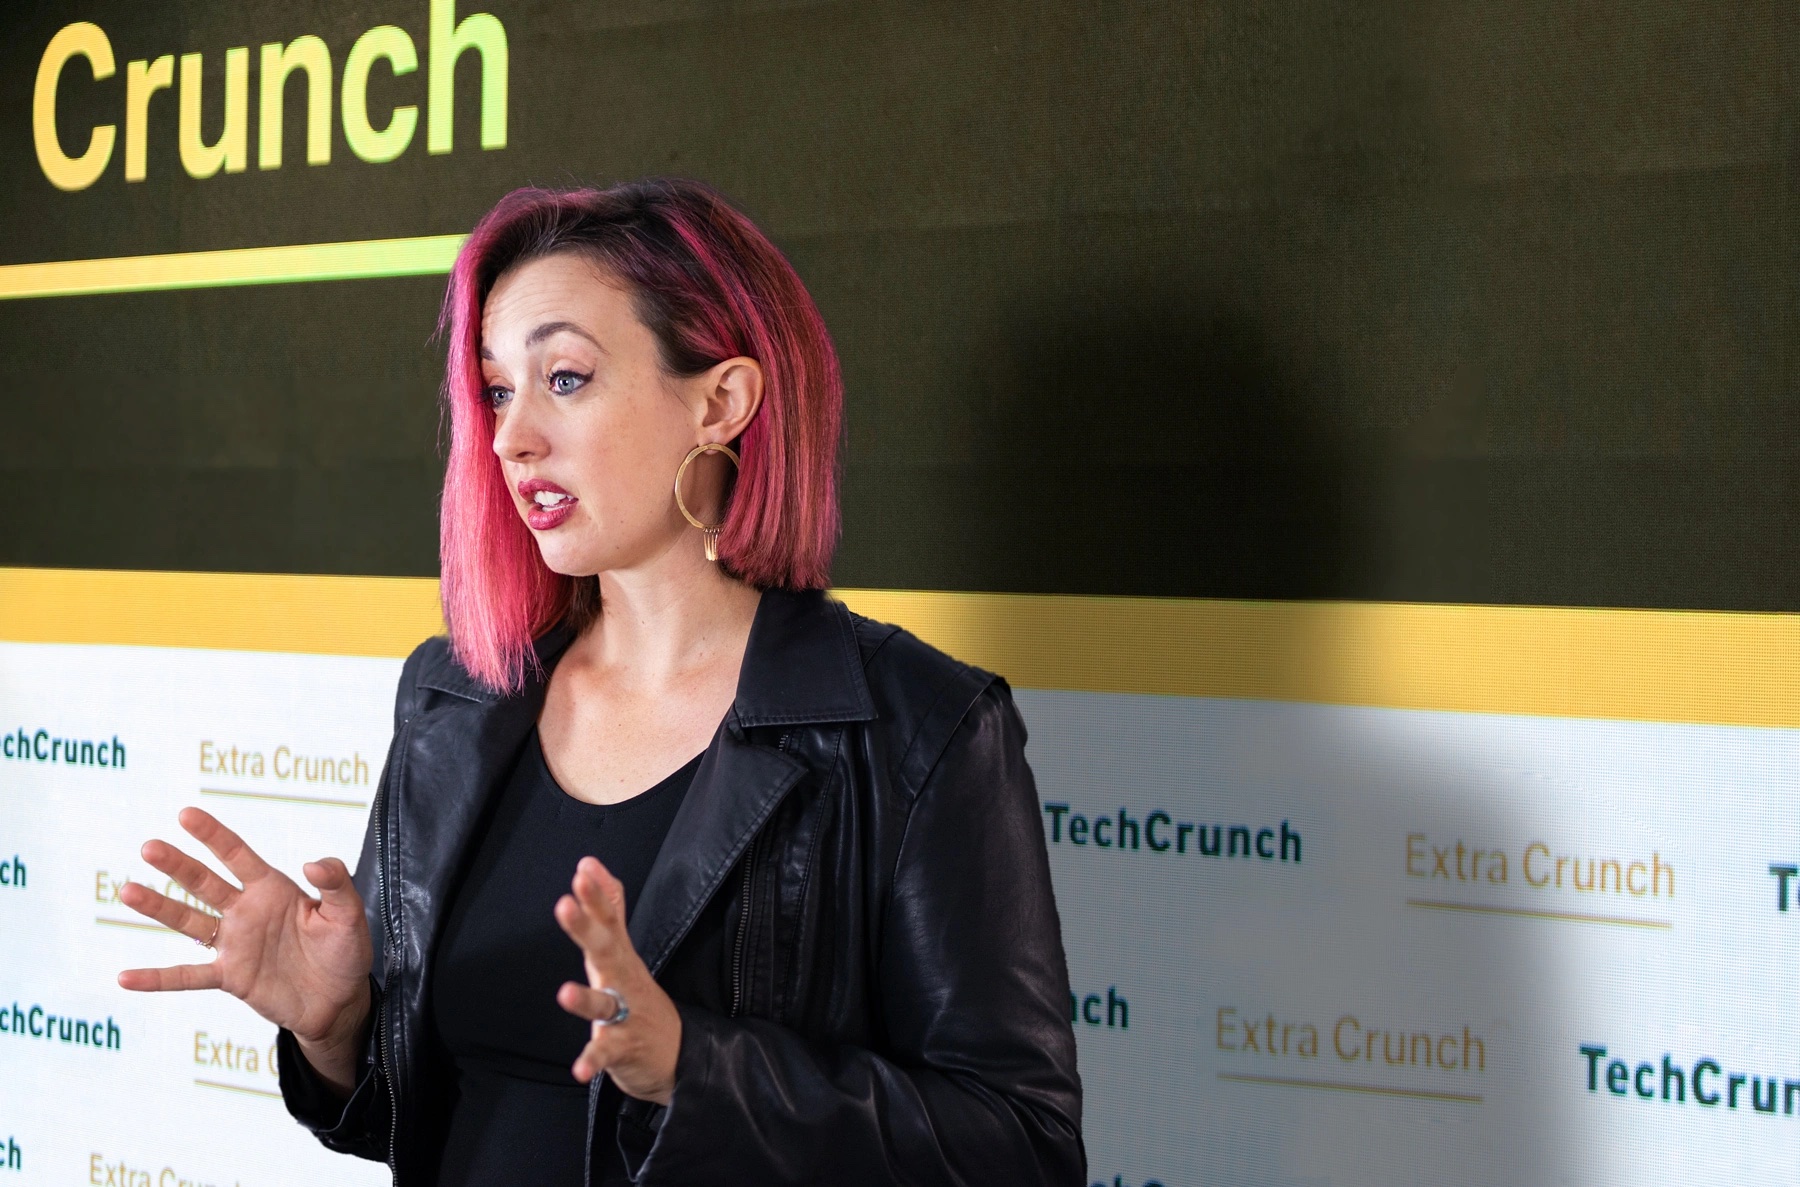 Una imagen compuesta de la abogada de inmigración Sophie Alcorn frente a un fondo con el logotipo de TechCrunch.